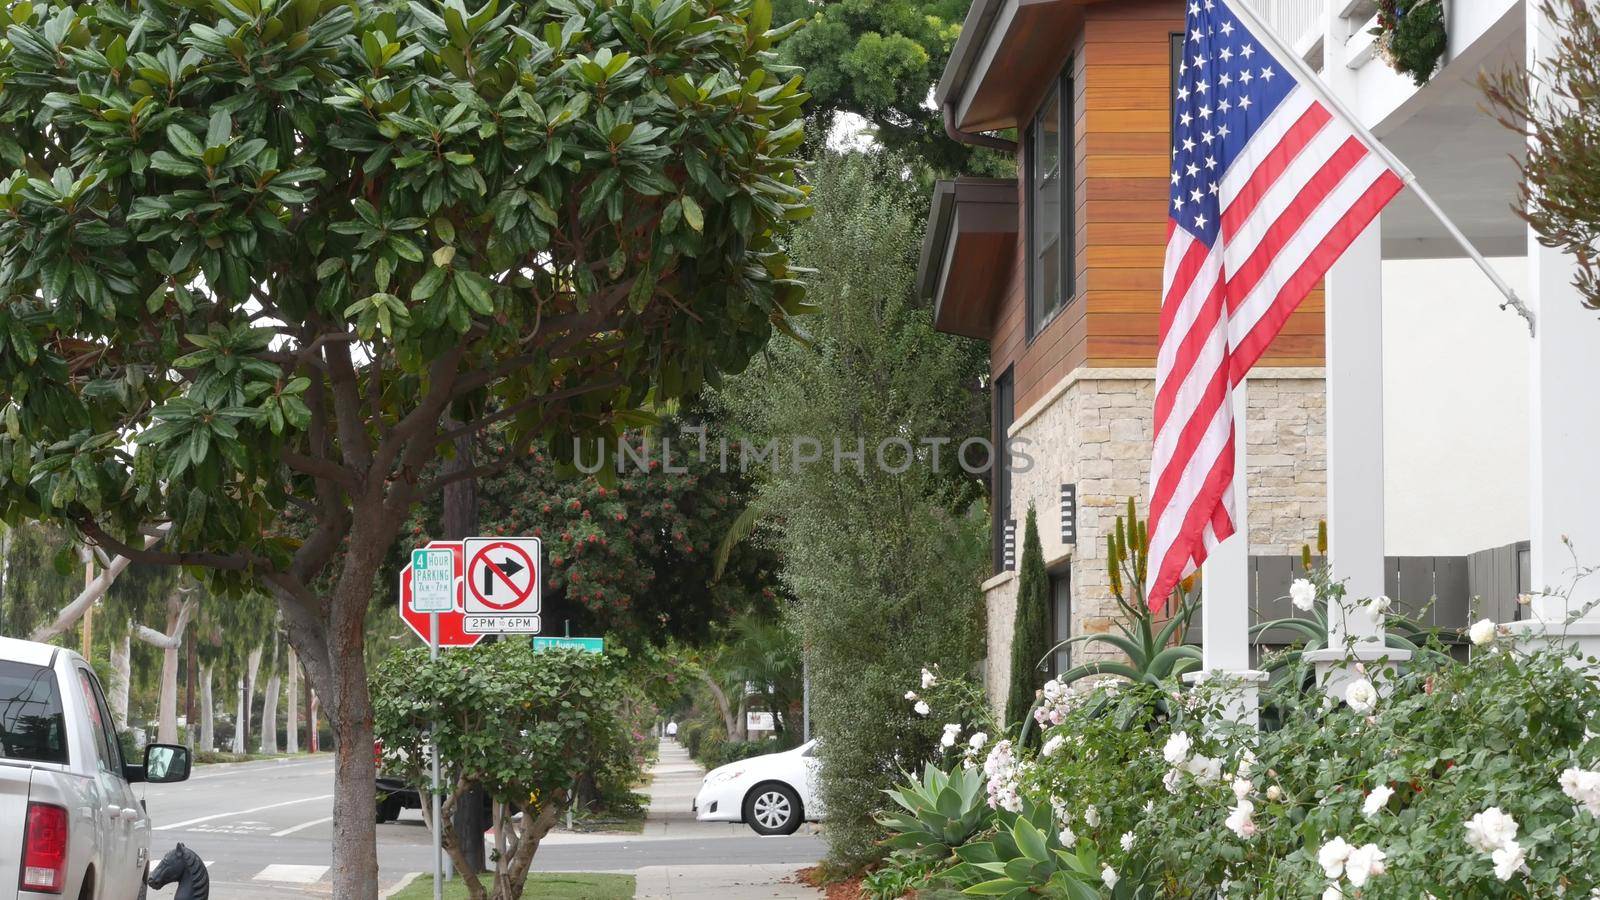 American flag waving, suburban house facade residential district, California USA by DogoraSun